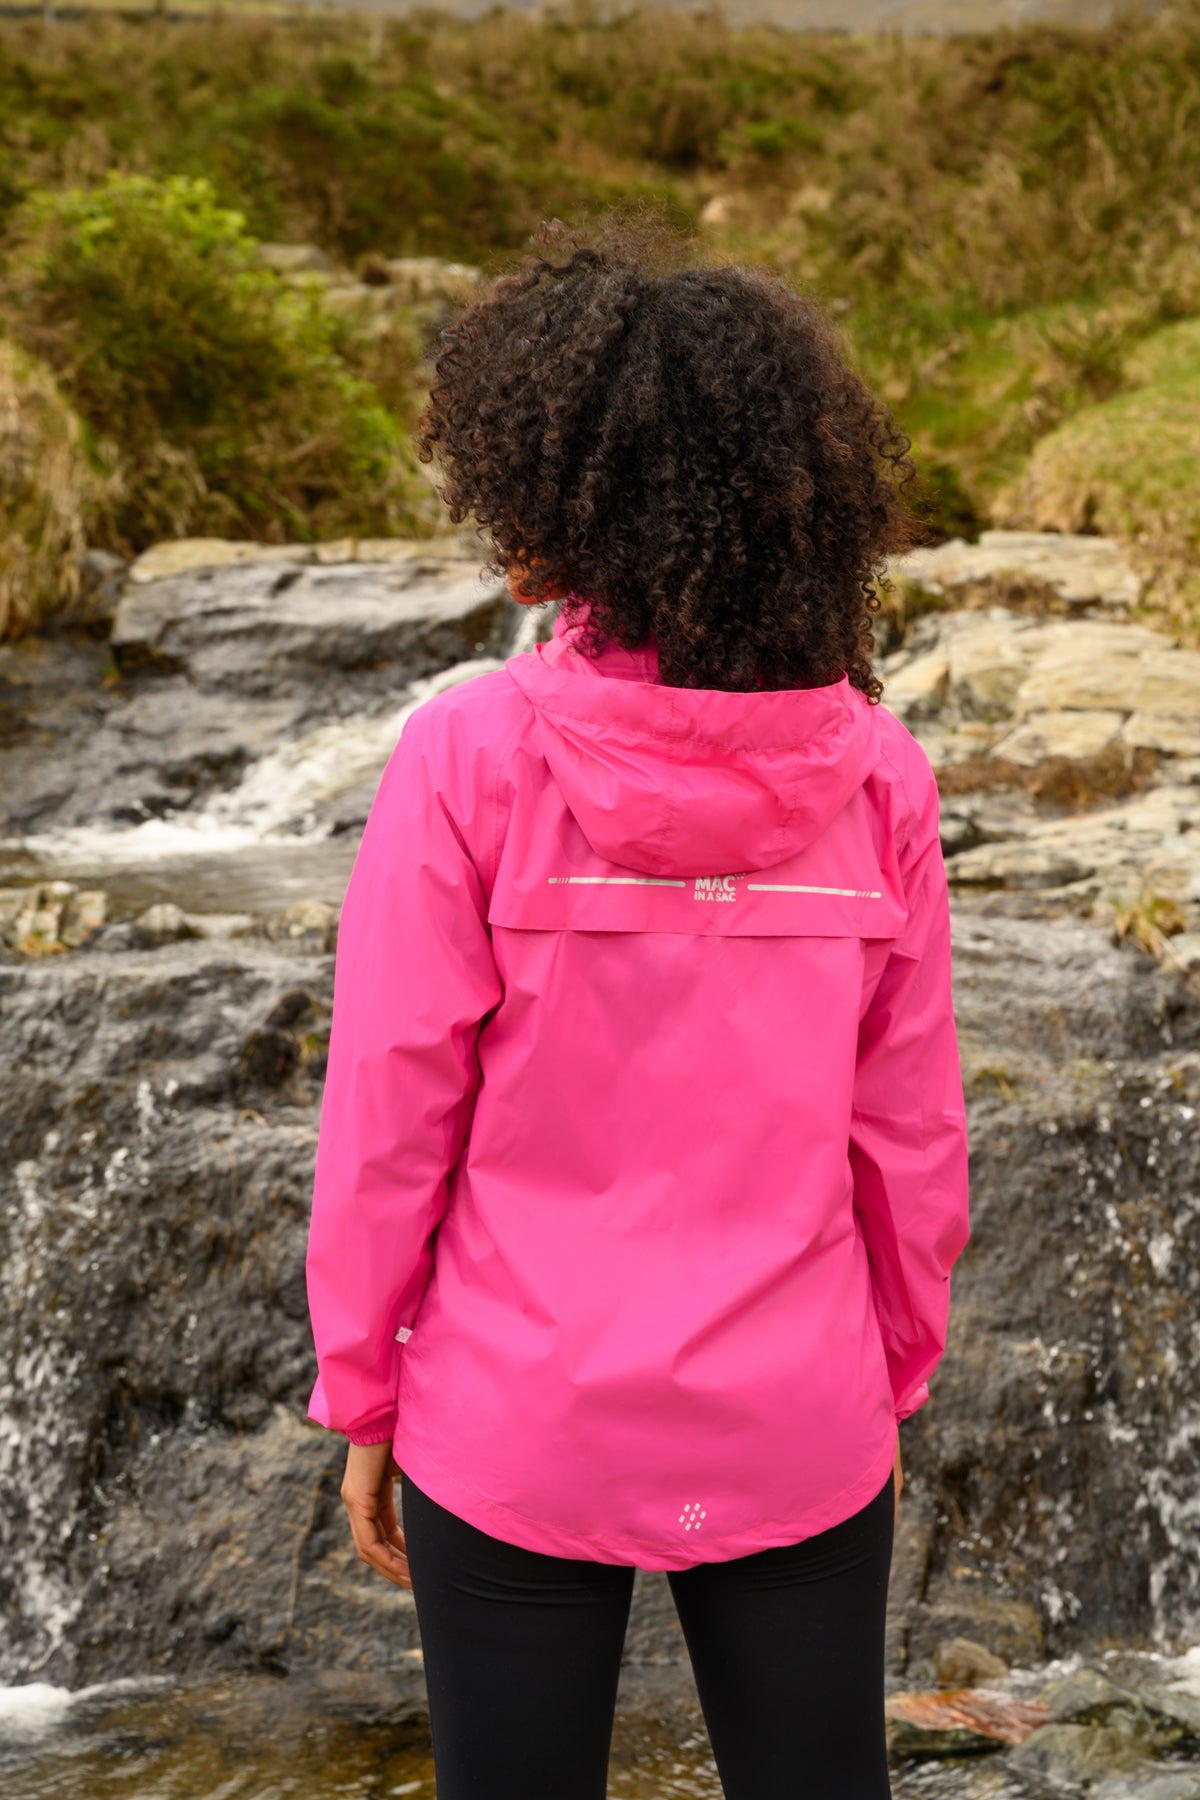 Origin Packable Waterproof Jacket - Pink